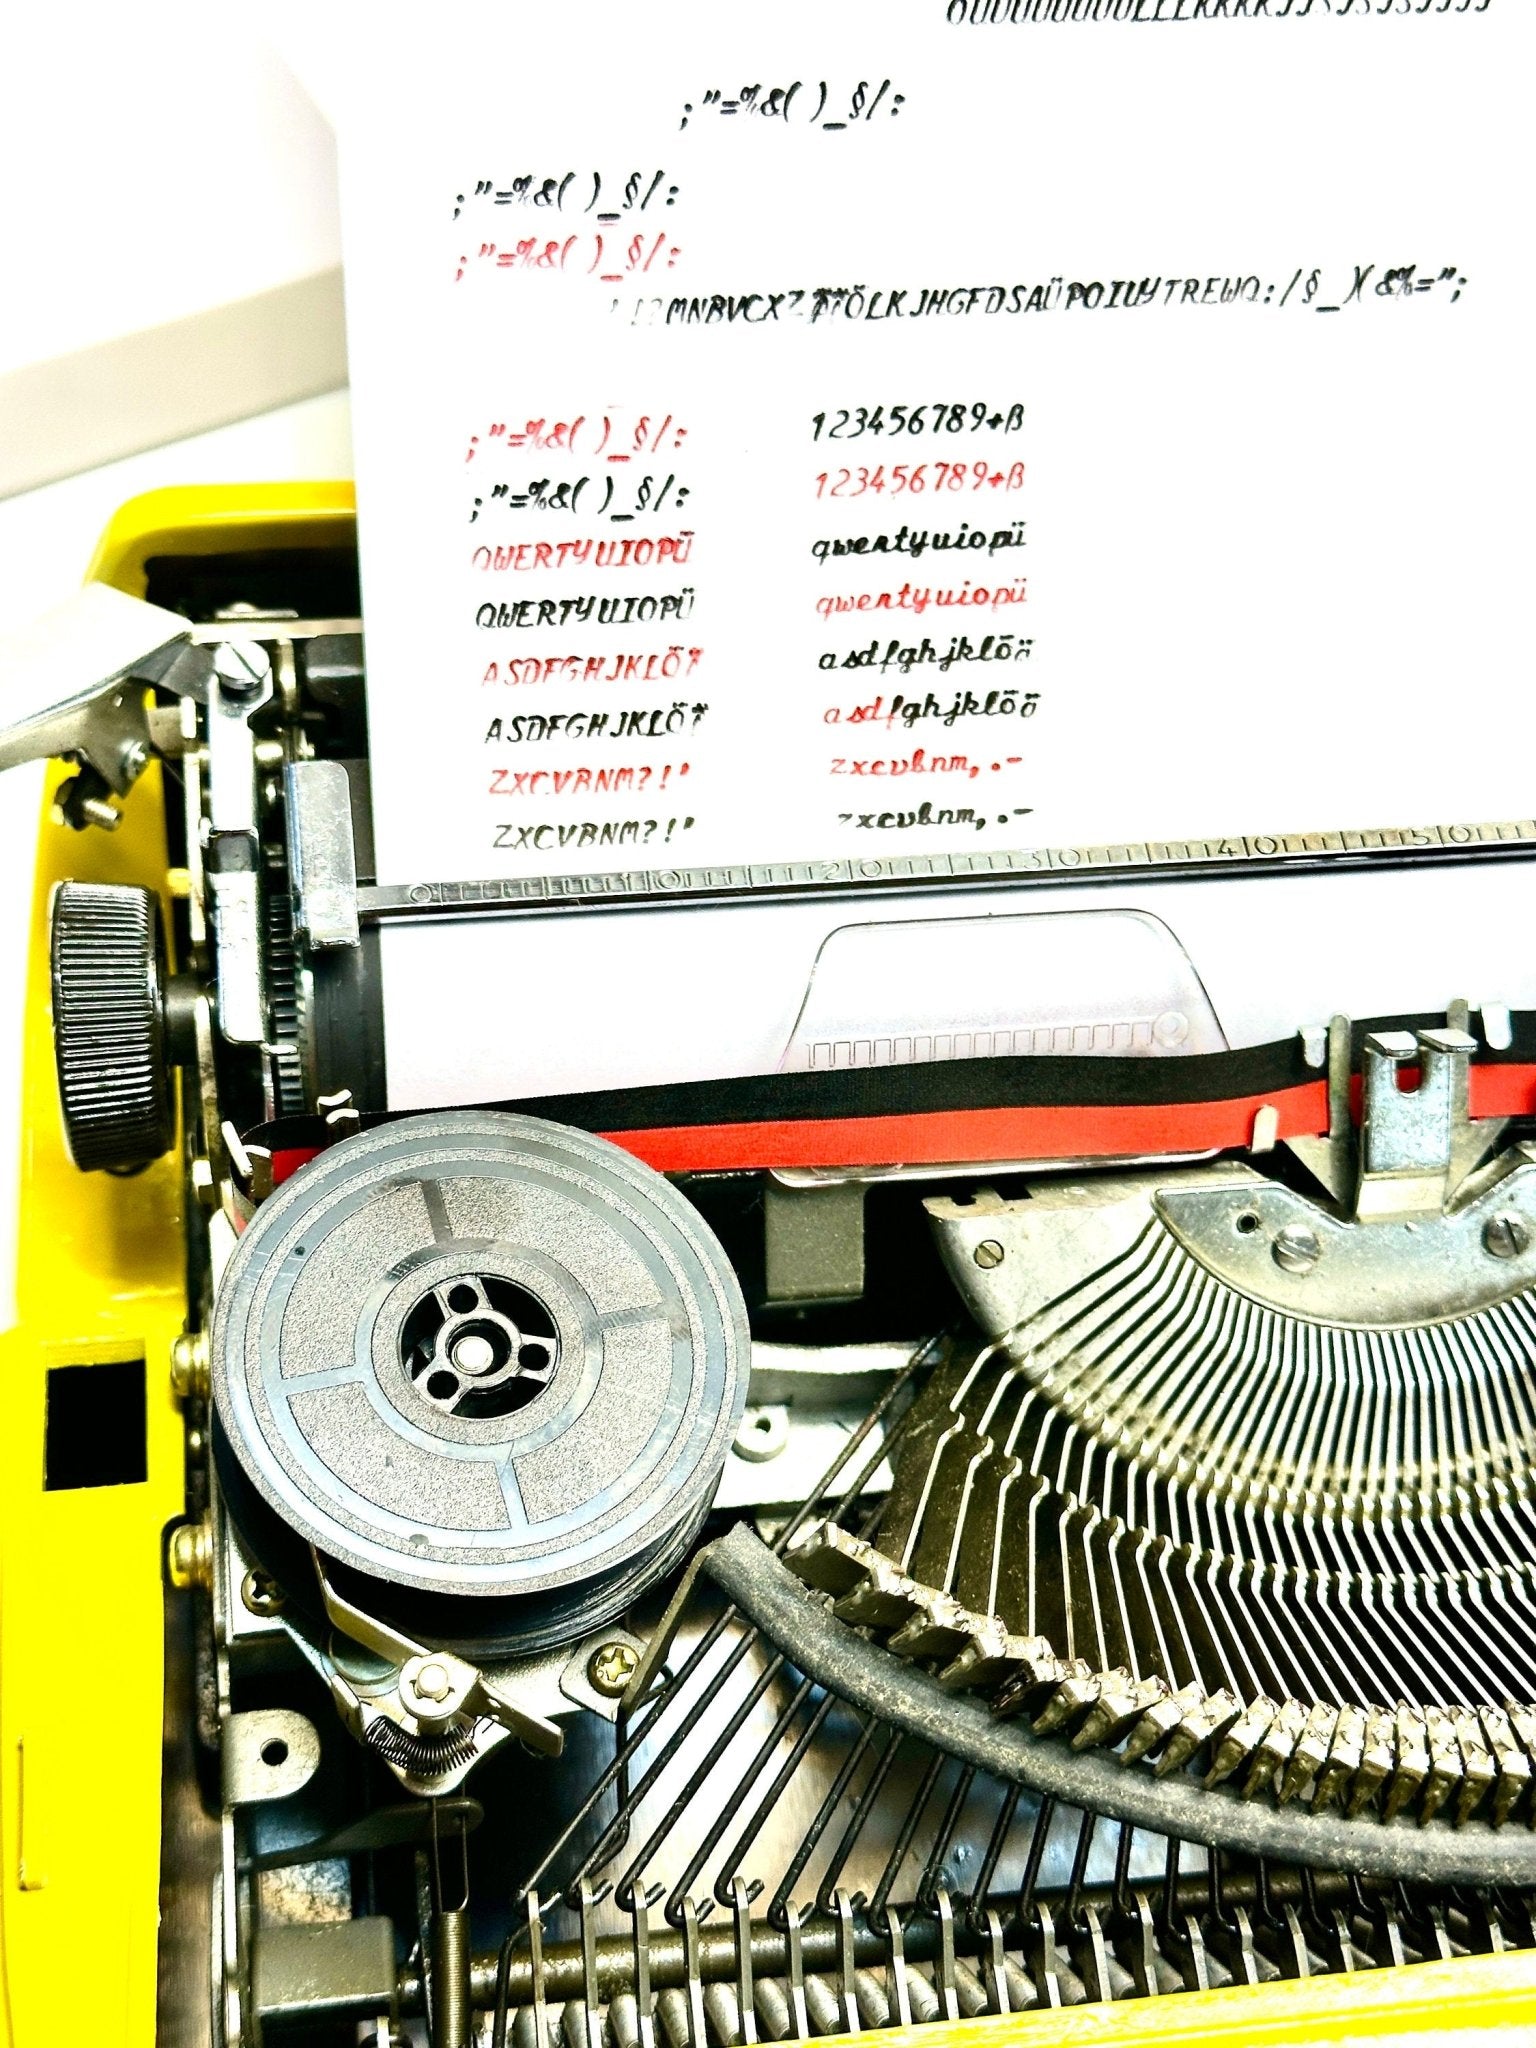 Handwritten Typewriter,Handwritten Elegance Privleg Yellow Typewriter - Premium Gift, Best Antique Gift, Christmas Present